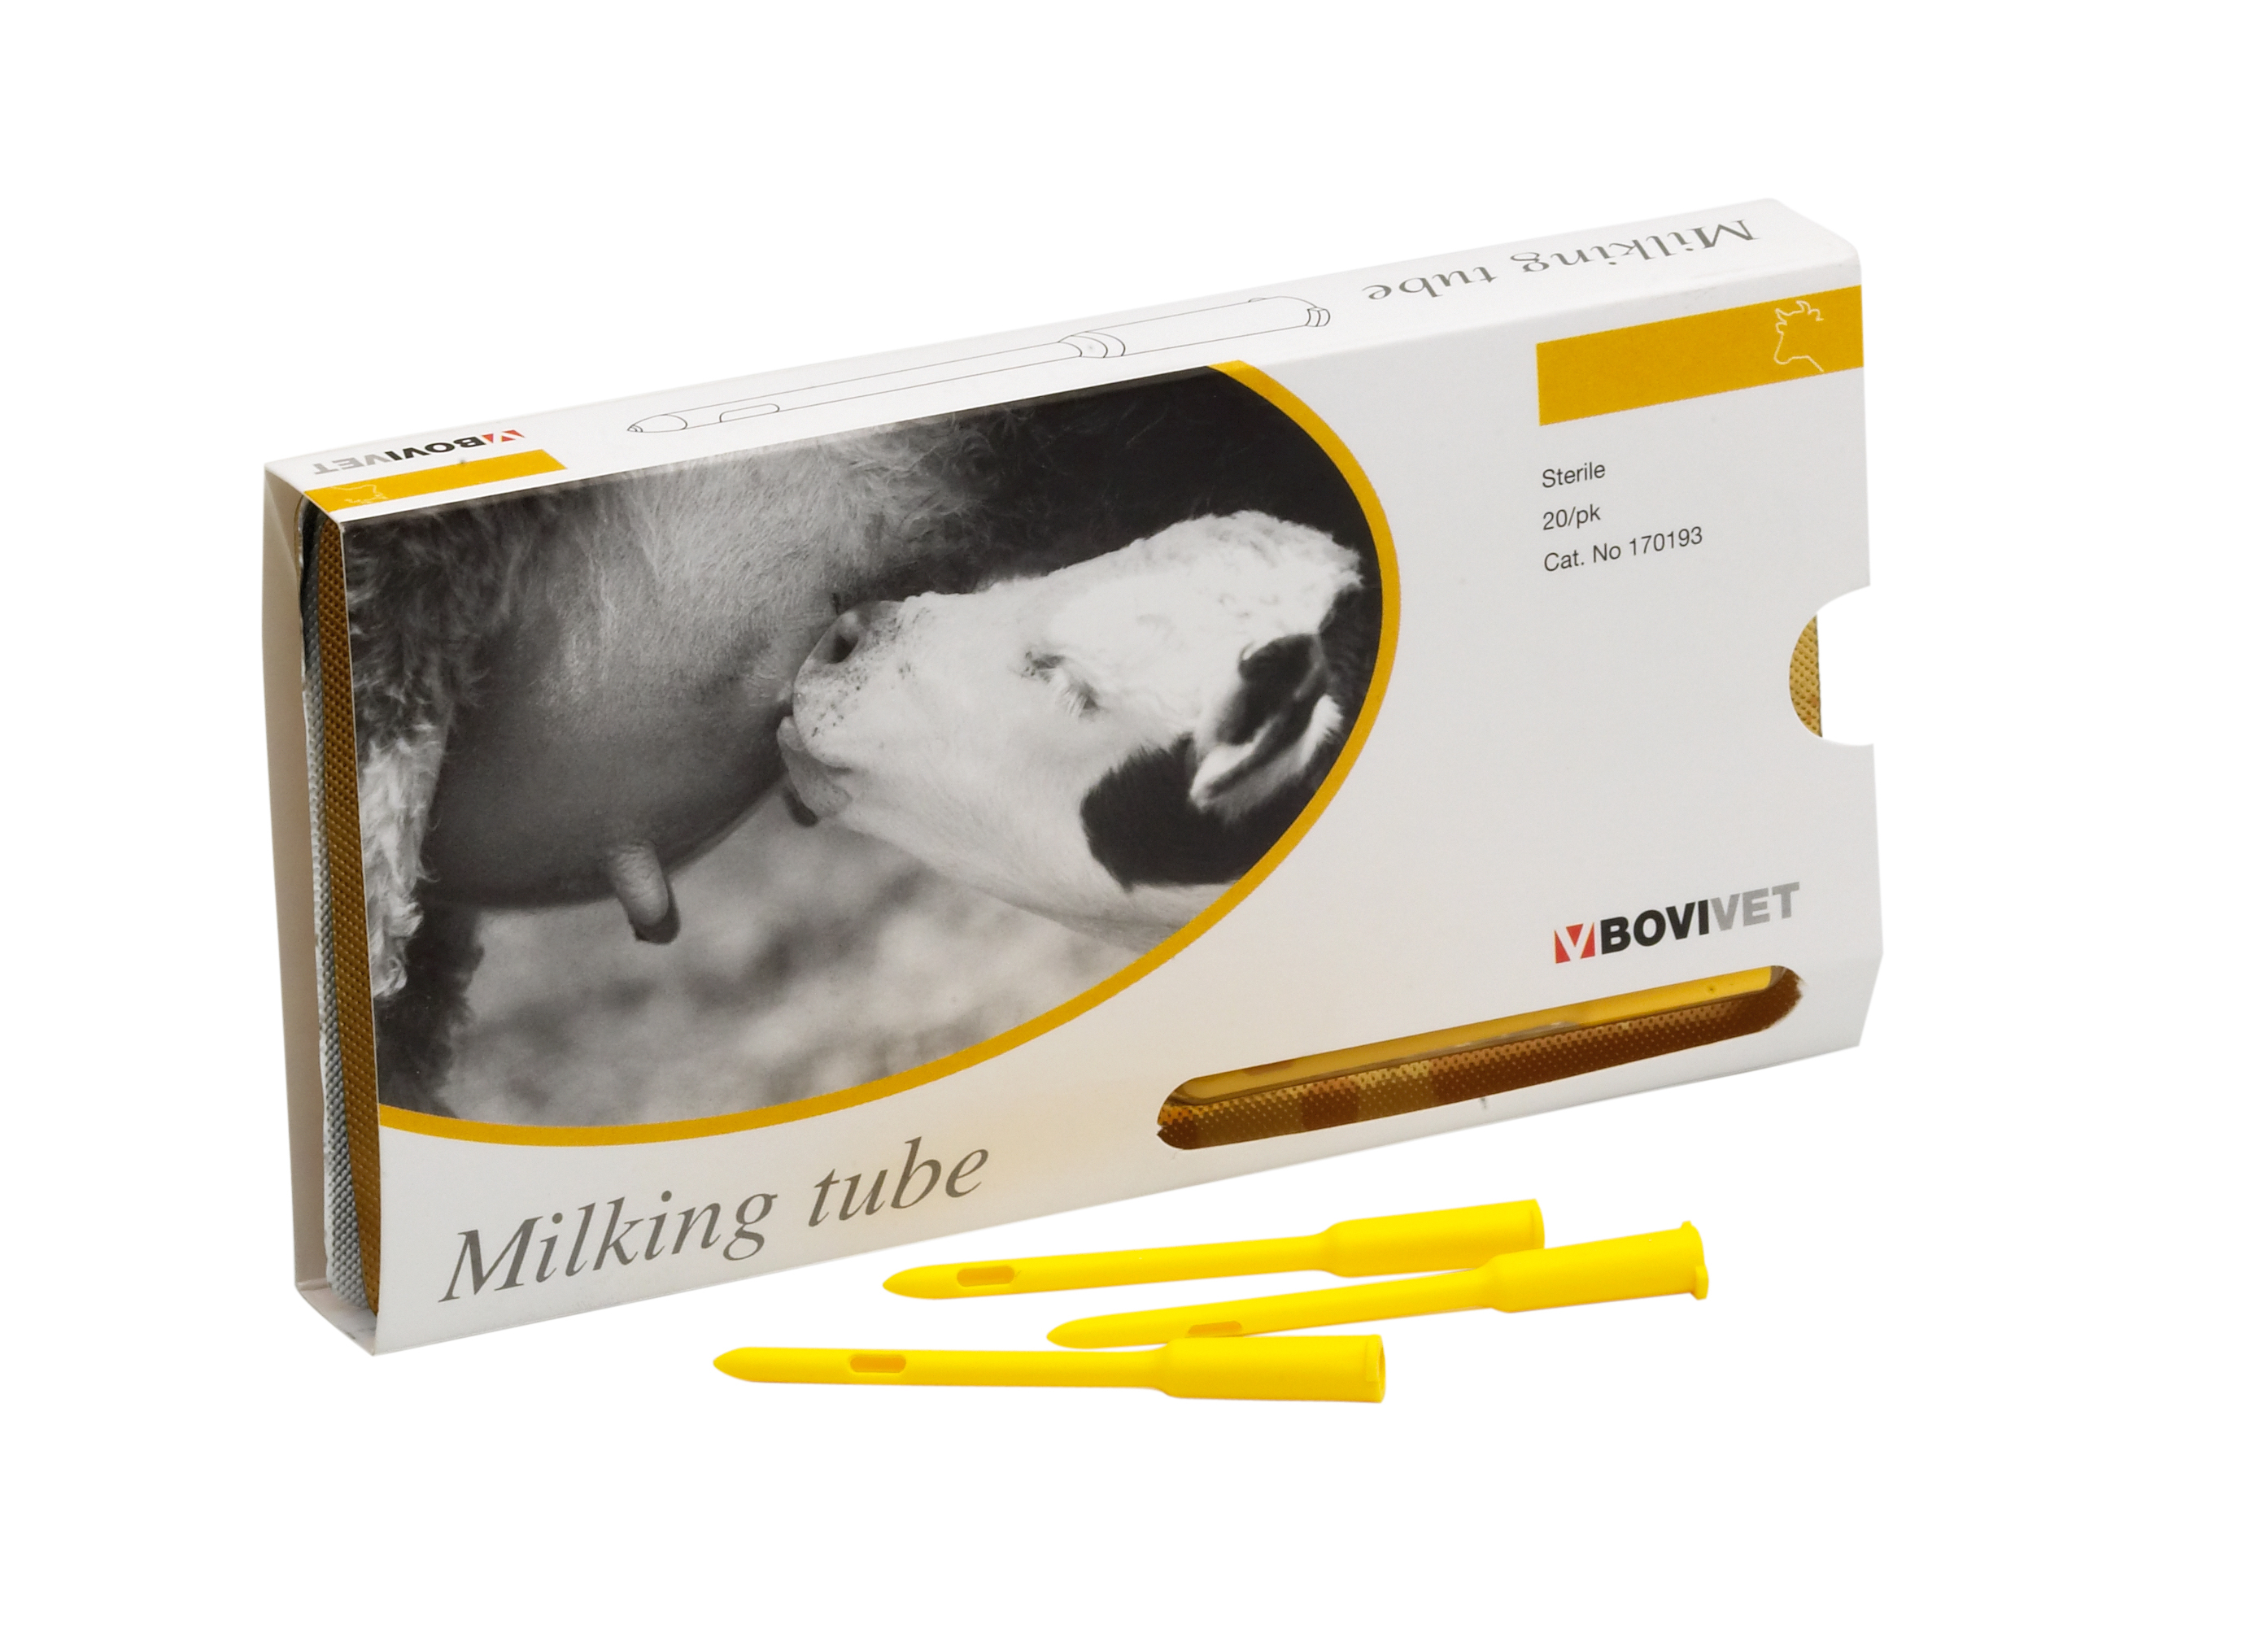 BOVIVET milking tube LL, yellow, sterile, 3.3 mm, 20/pk